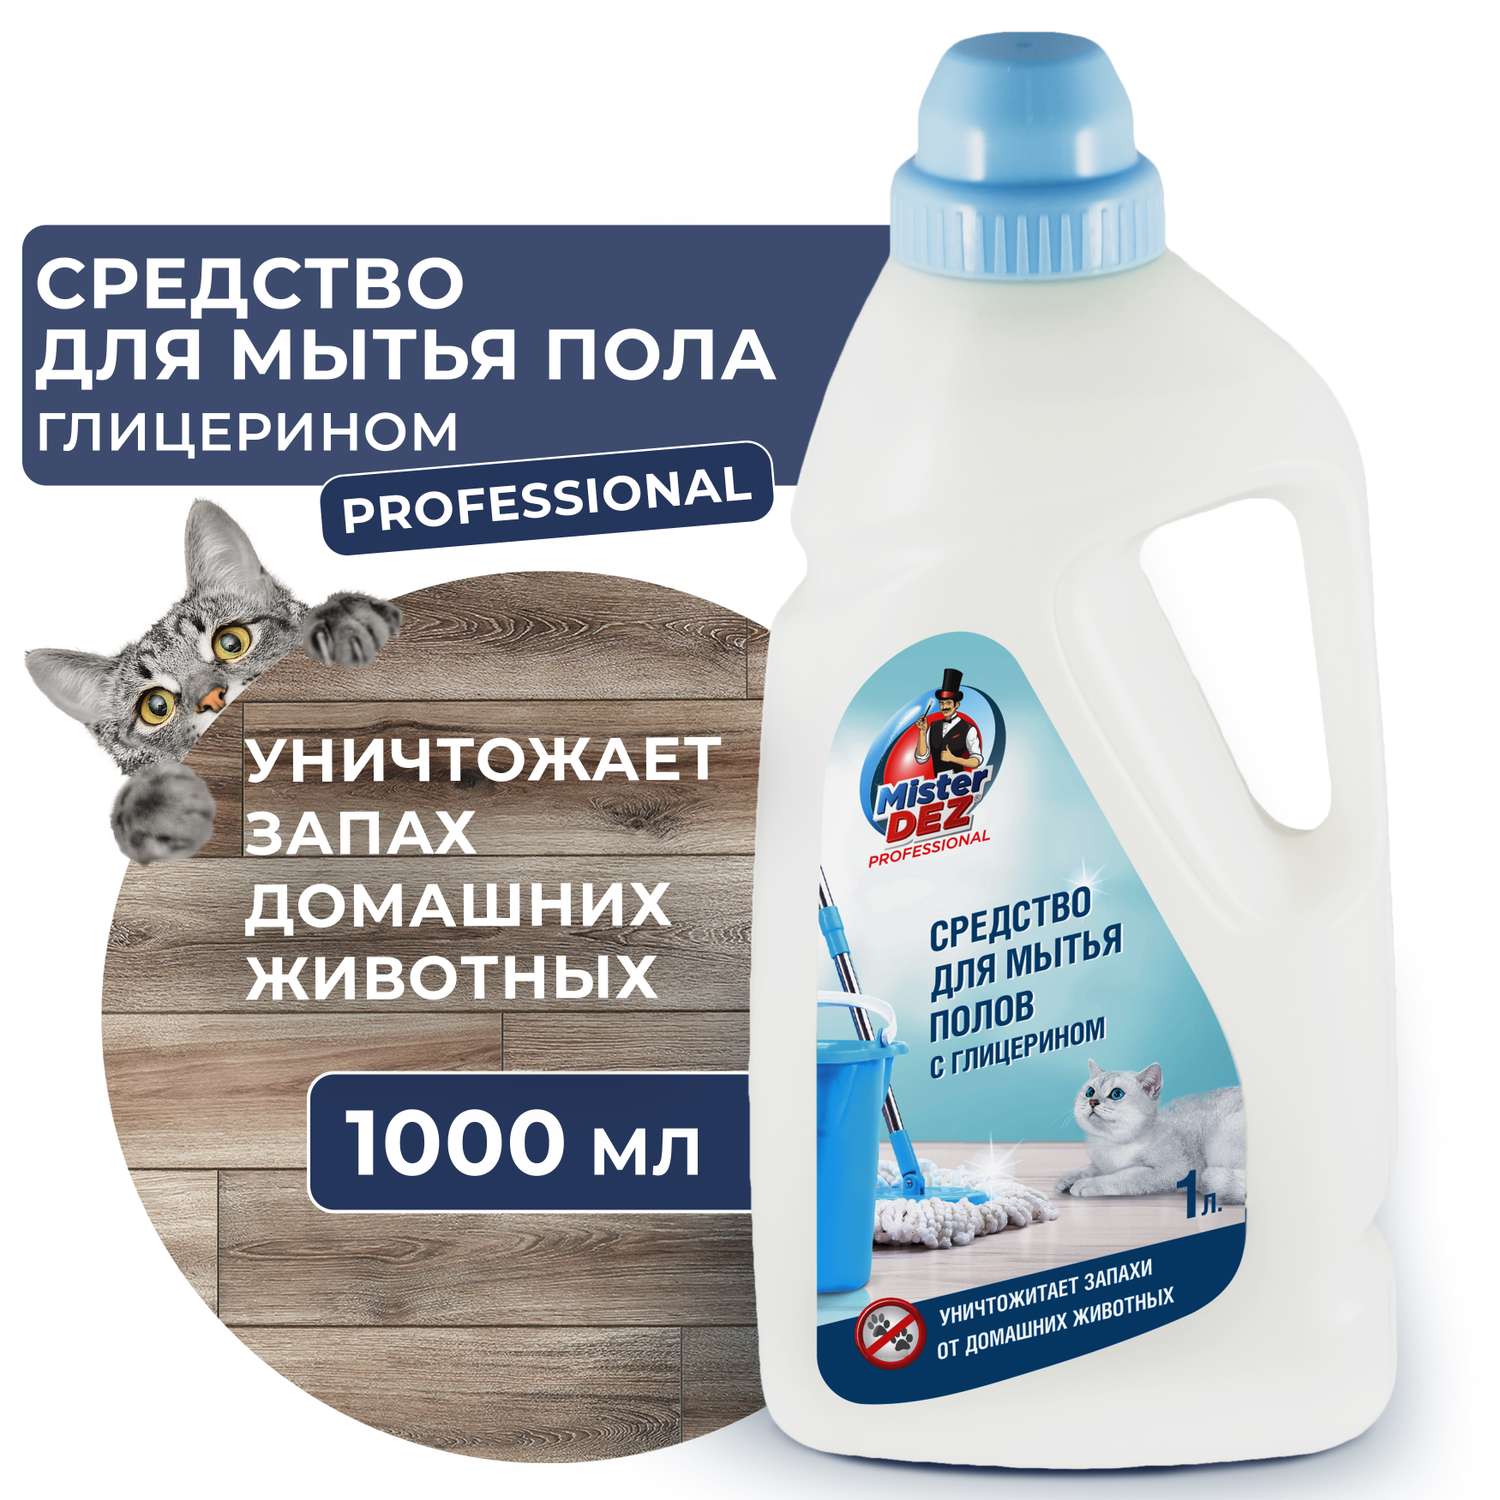 Средство для мытья полов Mister Dez Professional с глицерином и уничтожителем запаха домашних животных 1000 мл - фото 2